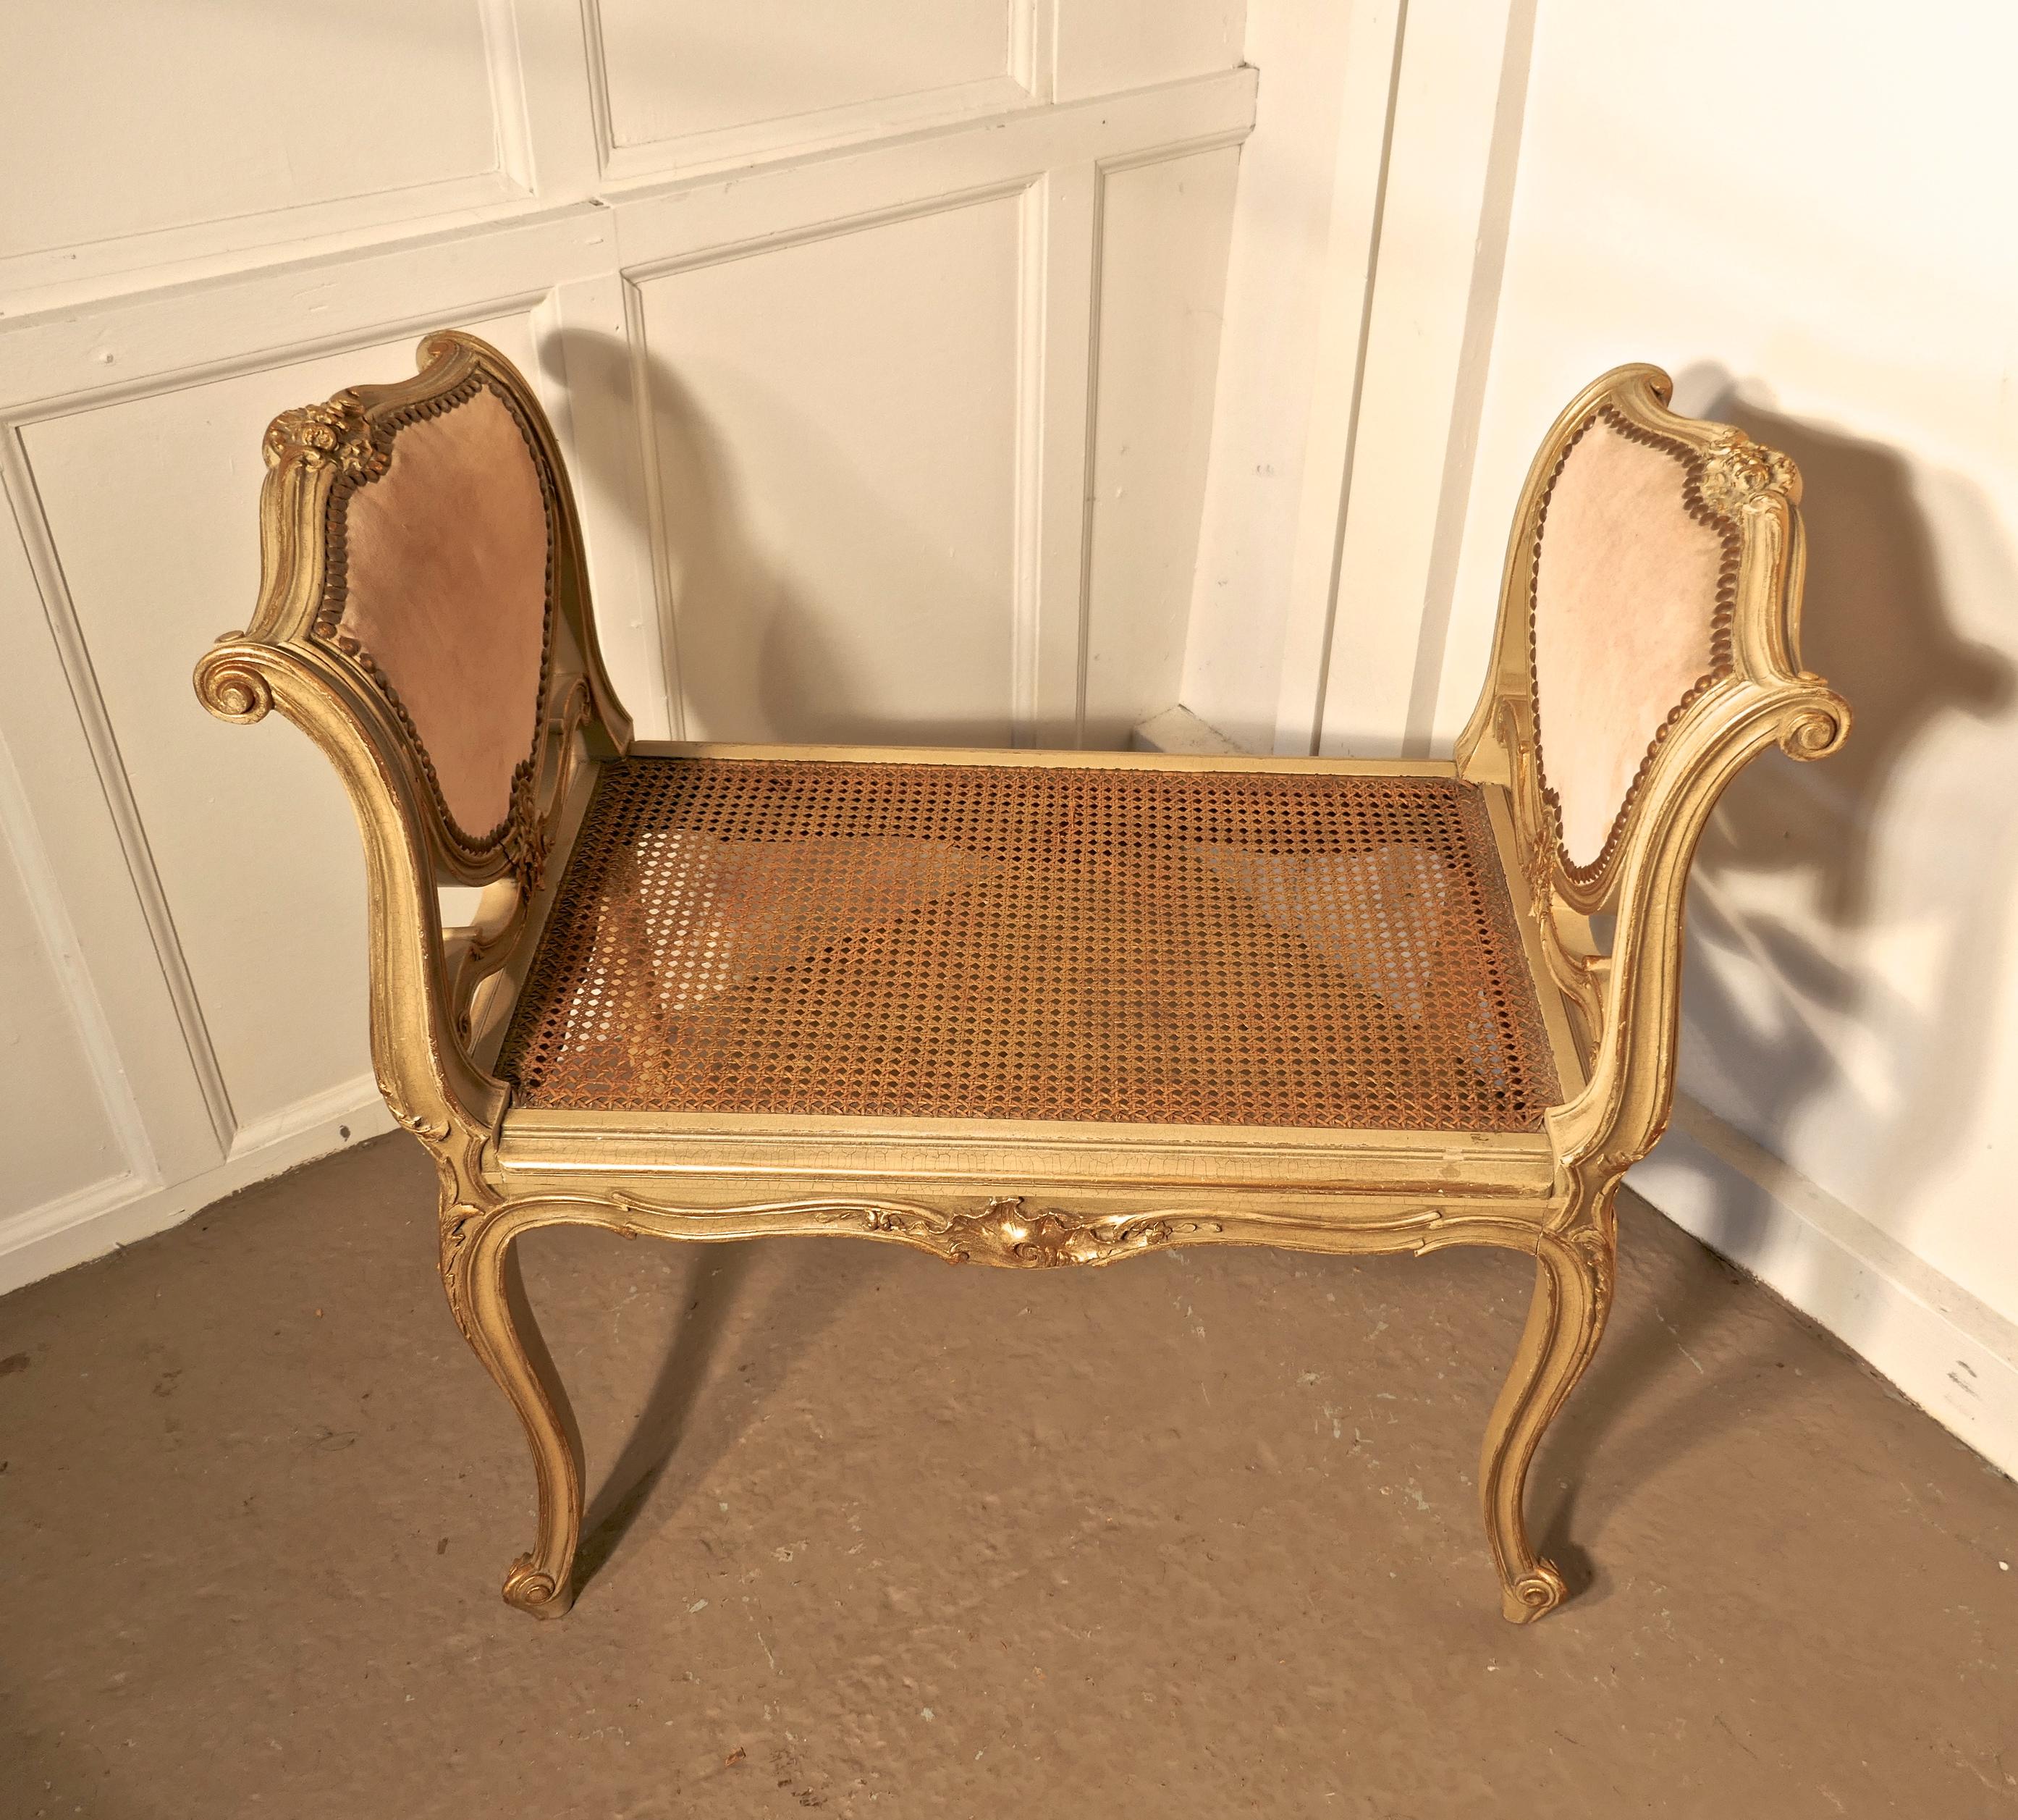  Louis Philippe rose poussiéreux  Siège de fenêtre boudoir doré

Il s'agit d'un charmant meuble chic peint de style Louis. Les accoudoirs hauts de chaque côté ont des panneaux en forme de cœur tapissés de velours rose foncé.
Les pieds, les